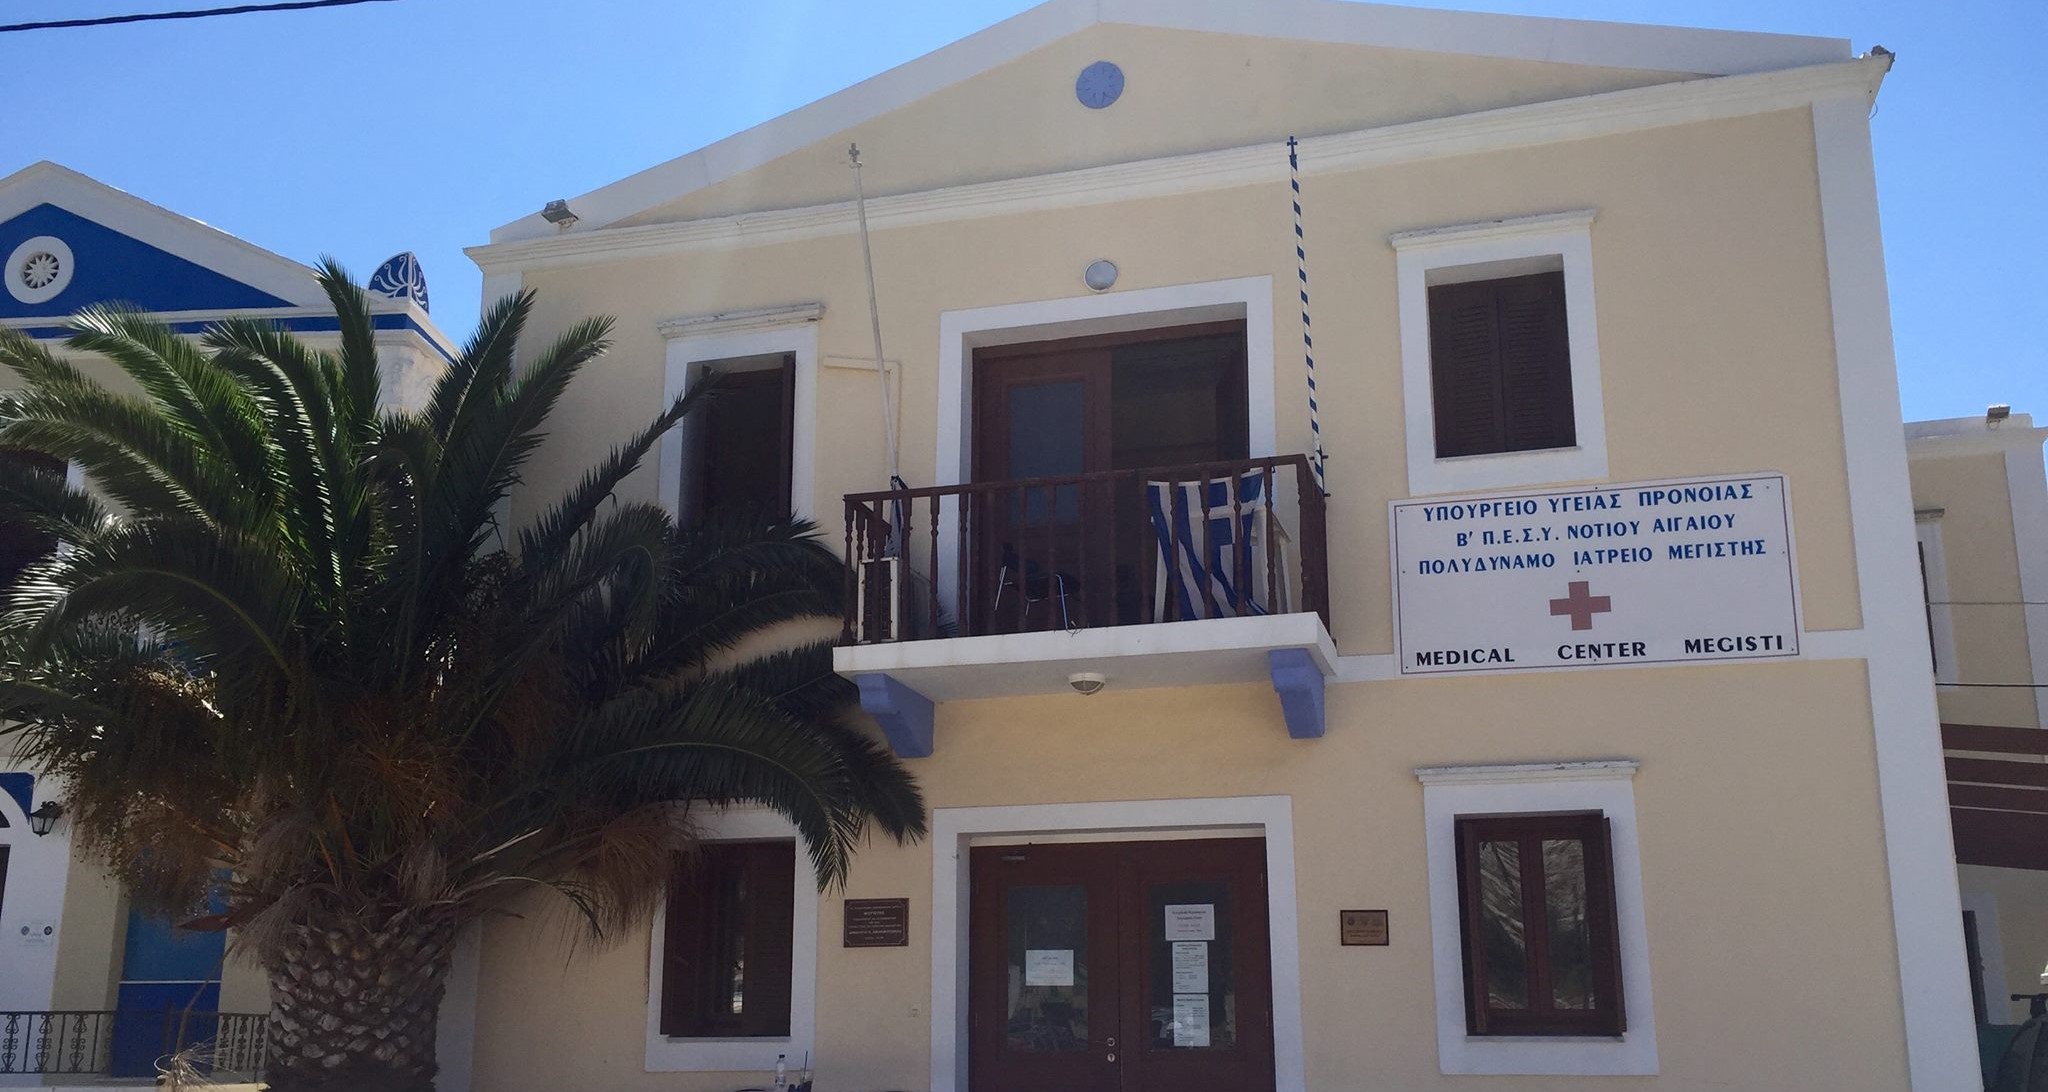 Αποστολή Ιατρικού Κλιμακίου στο Καστελλόριζο από την Περιφέρεια Νοτίου Αιγαίου μέσω της εταιρείας «ΓΑΛΗΝΟΣ»